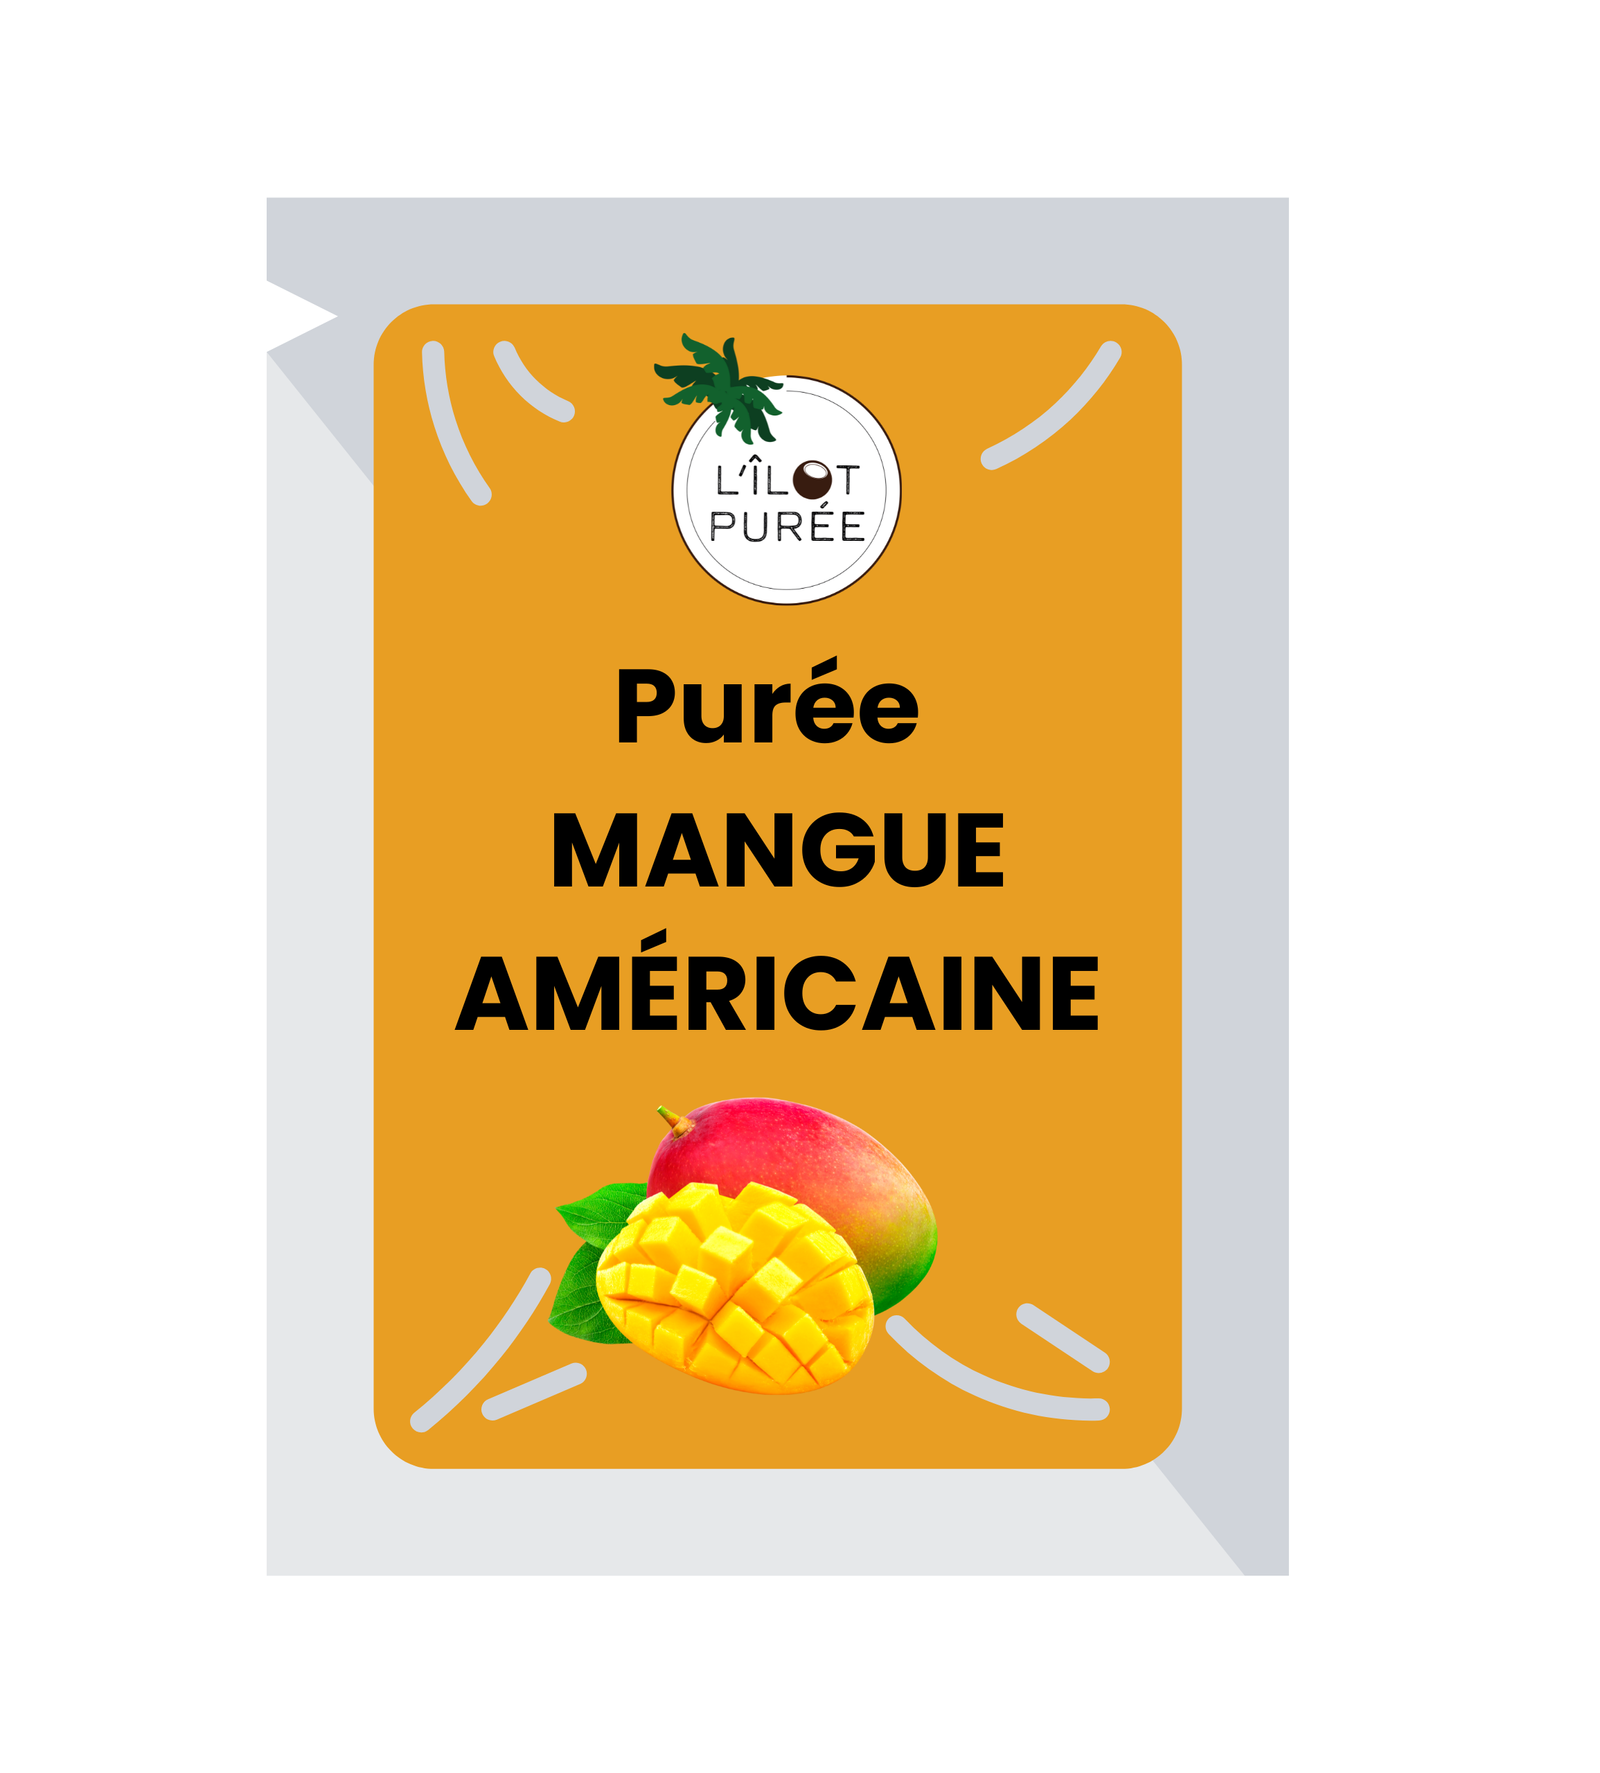 Purée de fruits mangue américaine 974